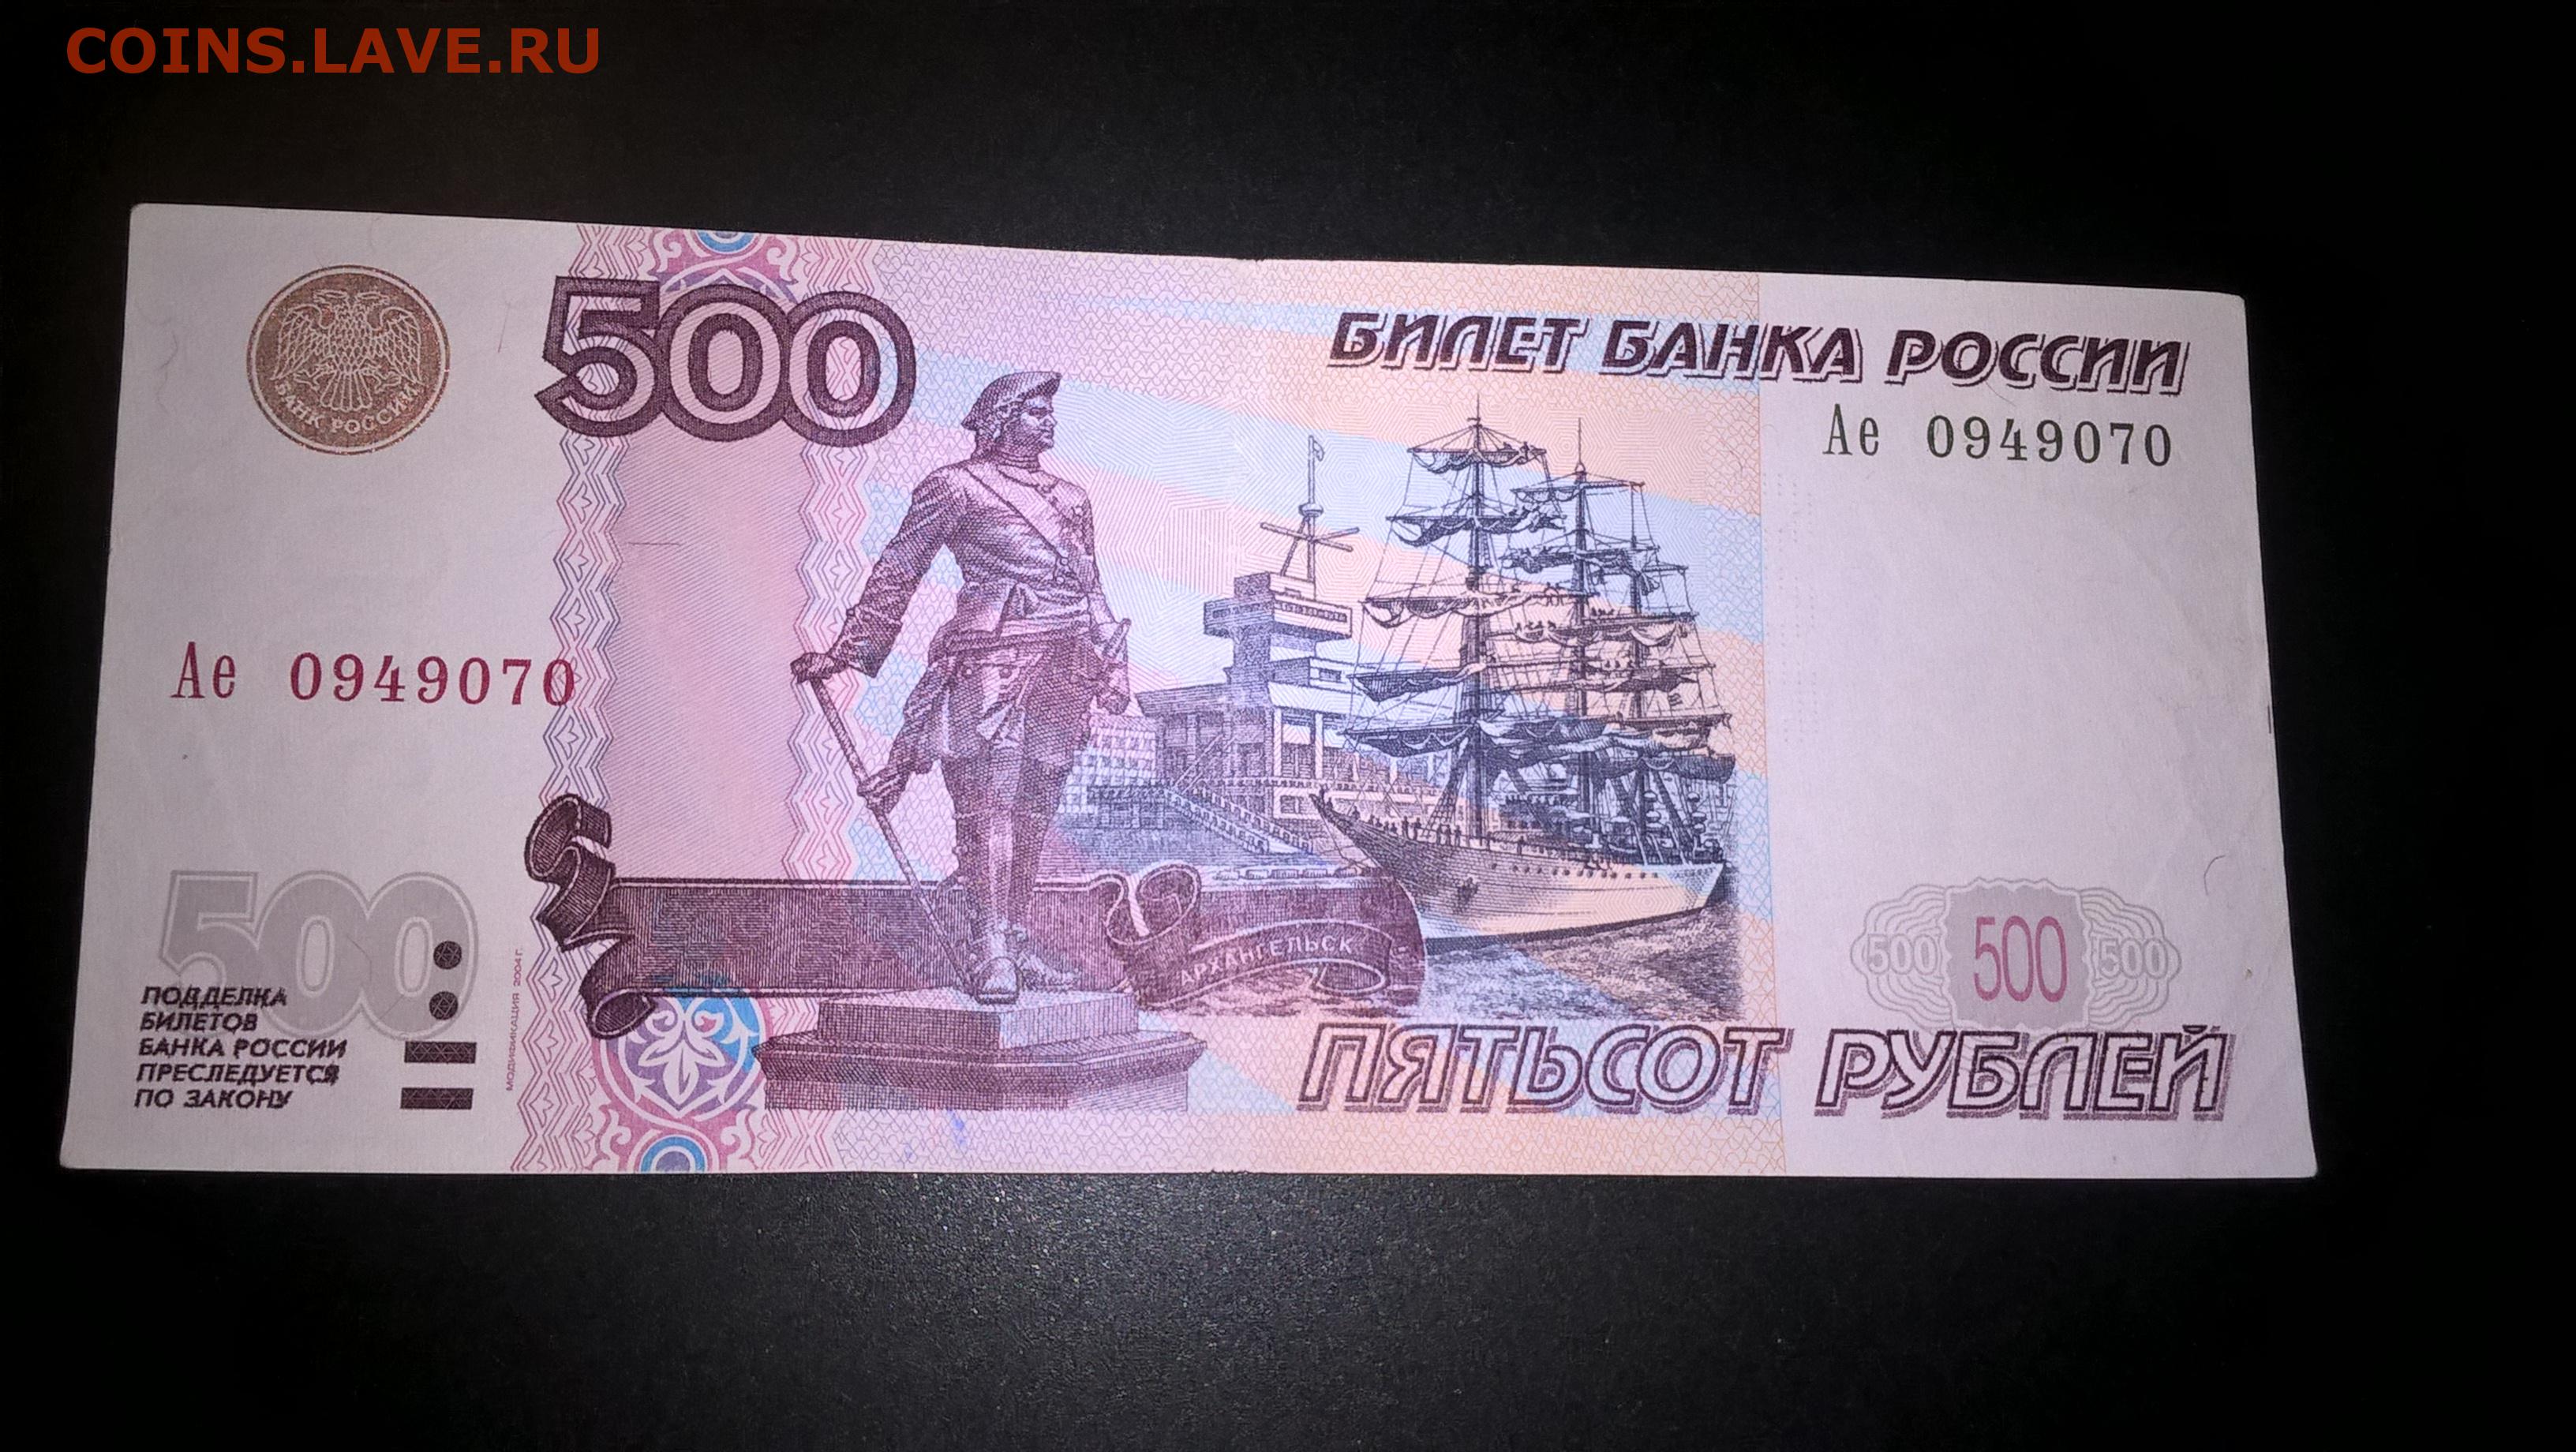 Банк 500 рублей. 500 Рублей 1997. Билет банка России 500 рублей. Пятьсот рублей 1997. Банкноты с автомобилями.